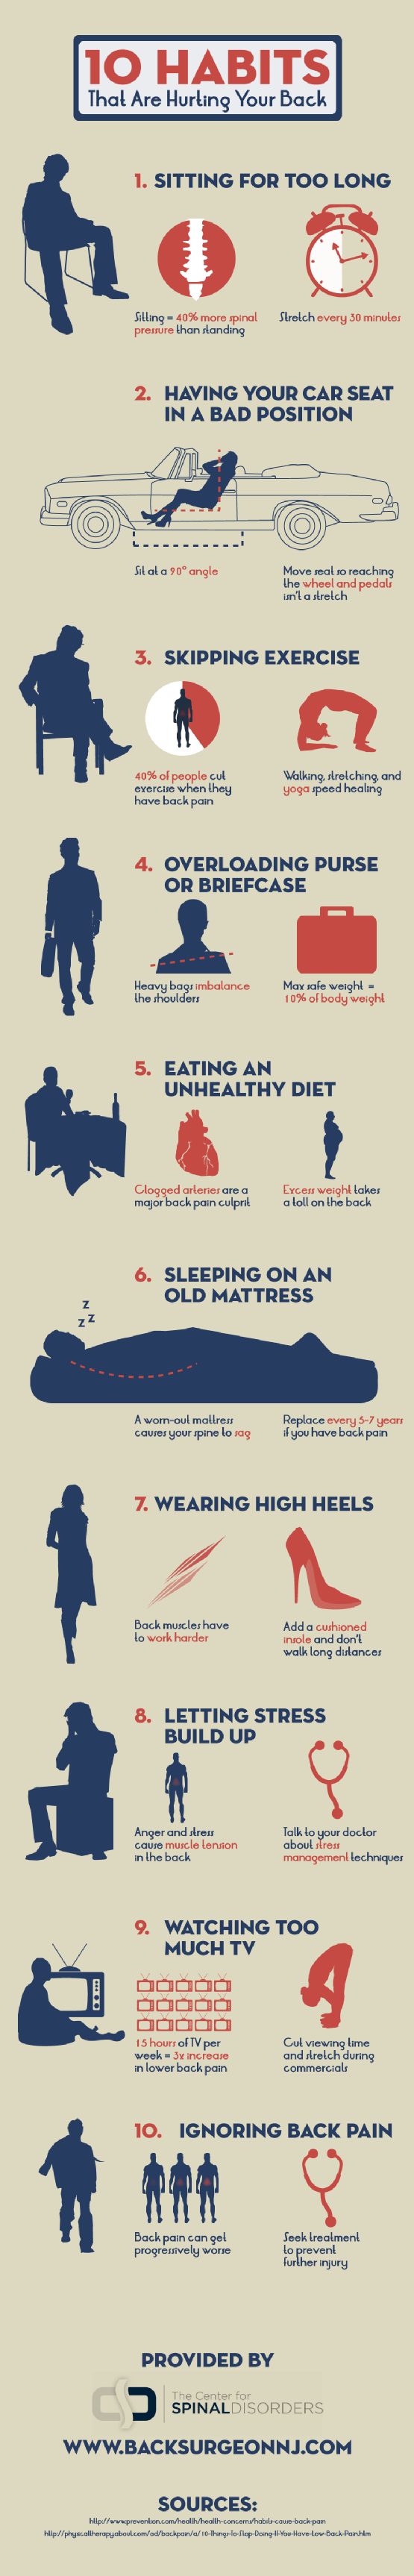 10 hábitos que pueden afectar nuestra espalda #Infografía #CuerpoHumano #Salud